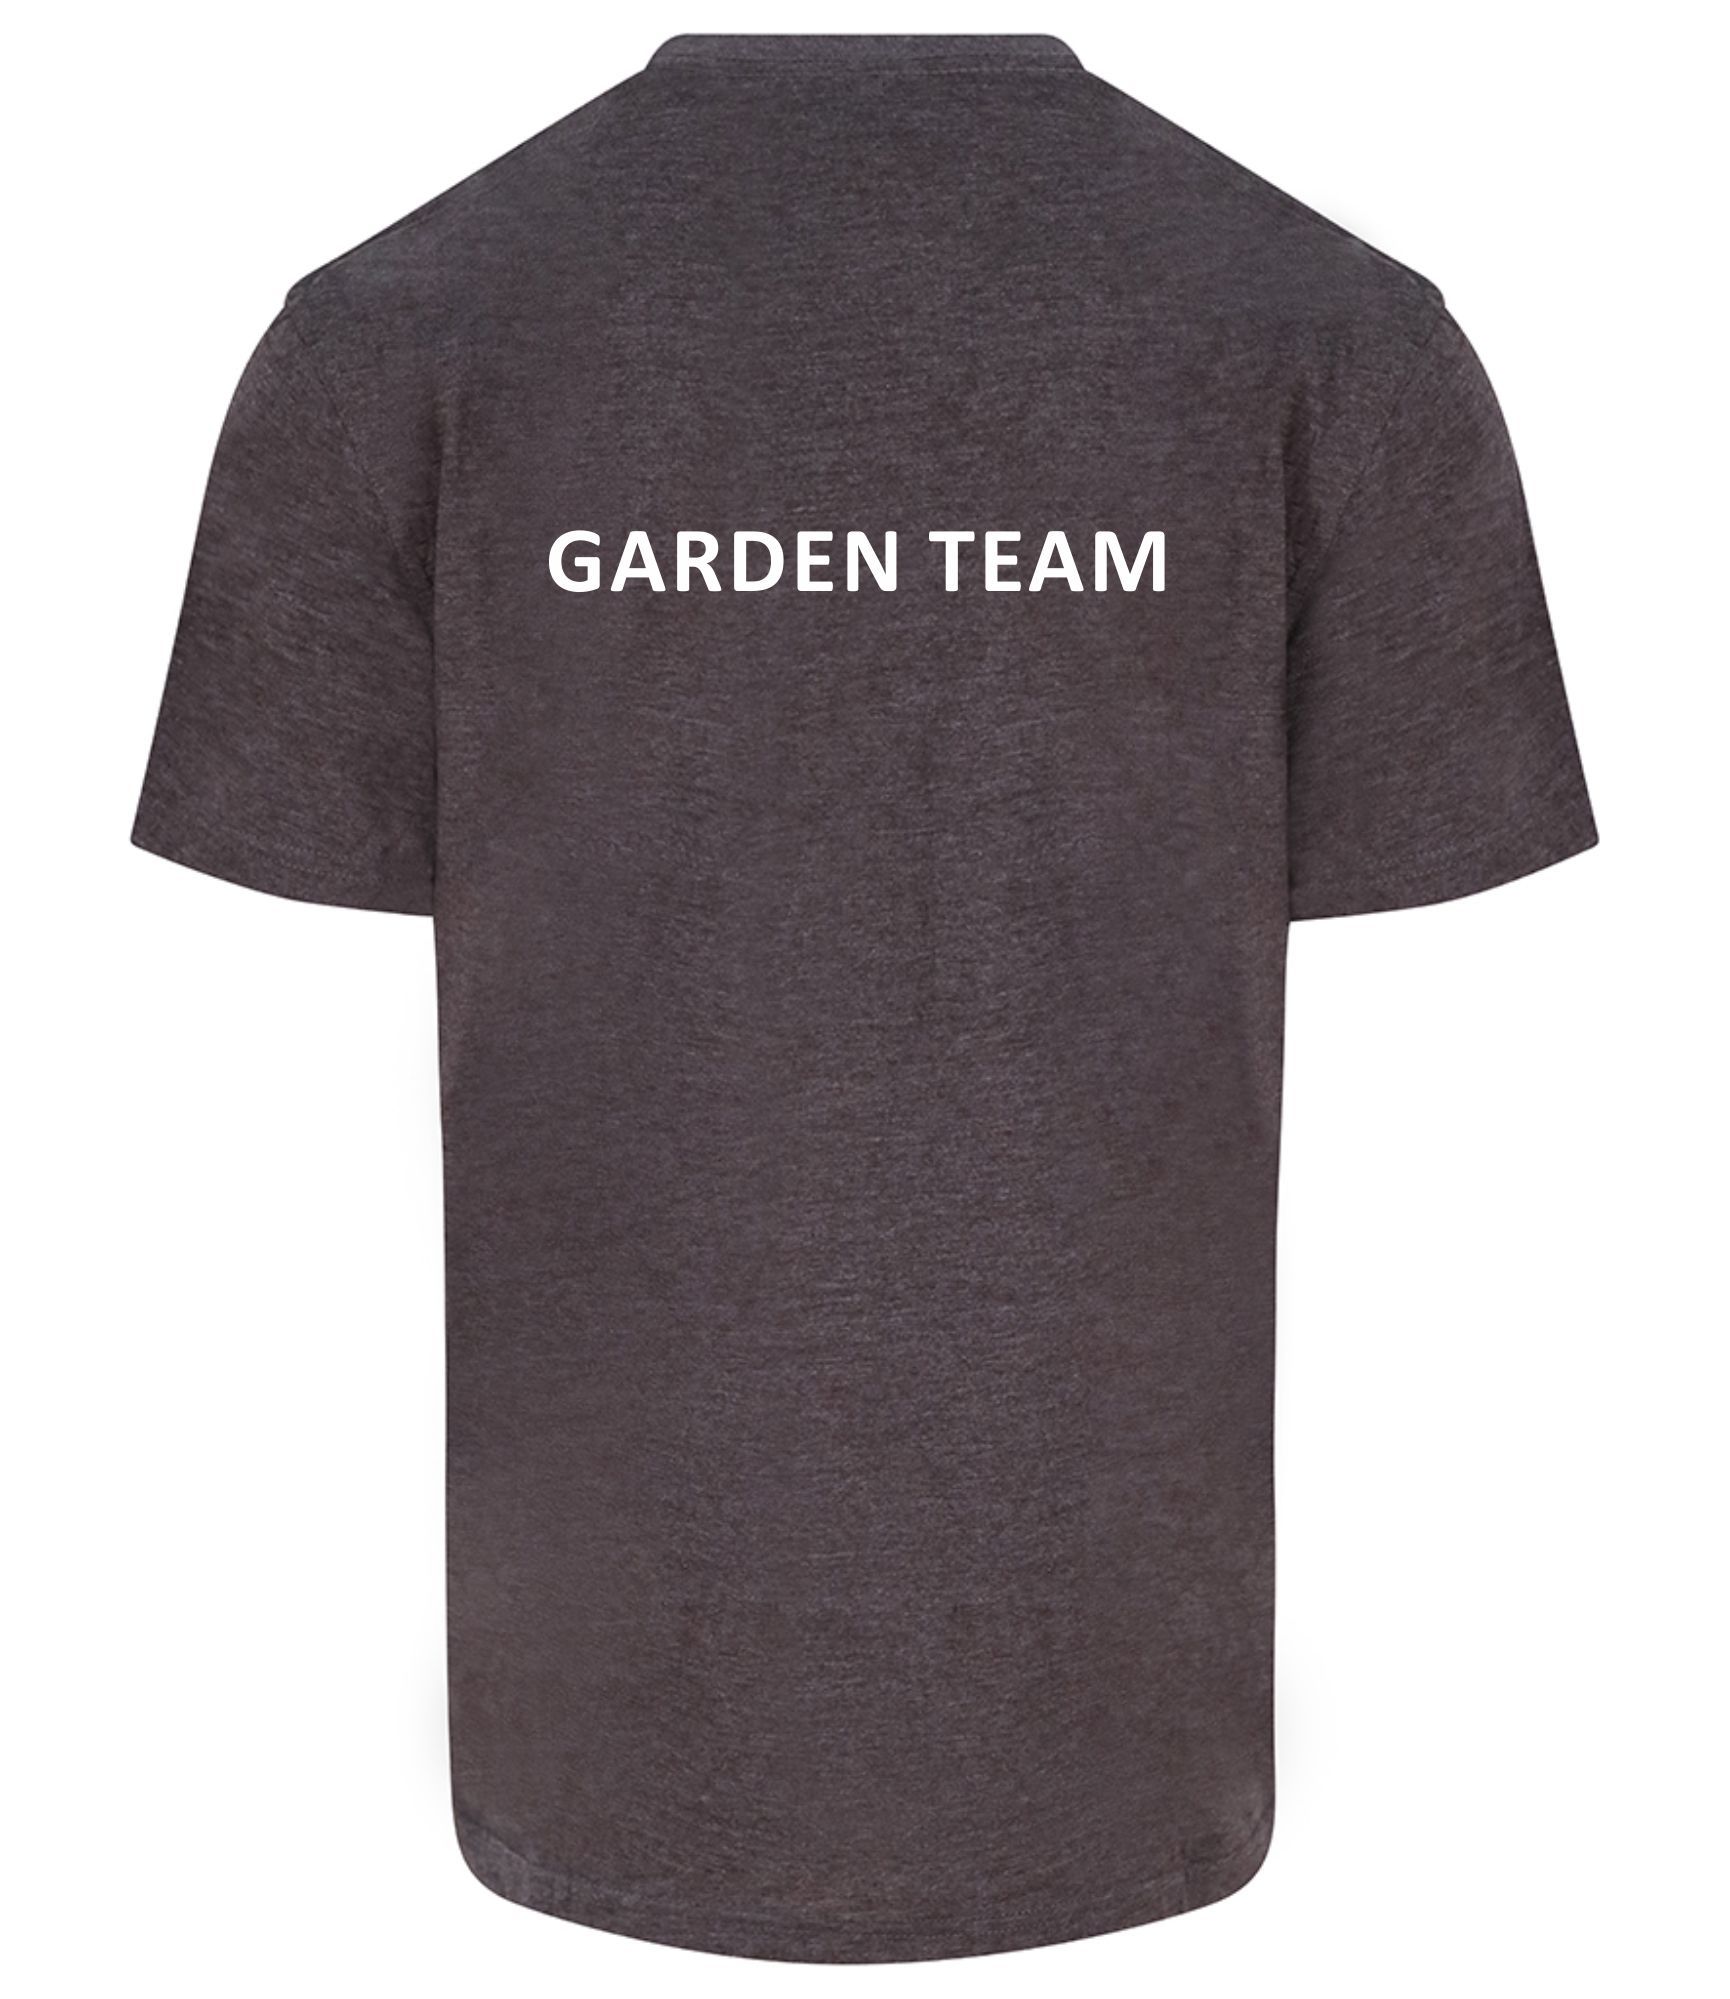 The Prospects Trust - T Shirt Garden Team